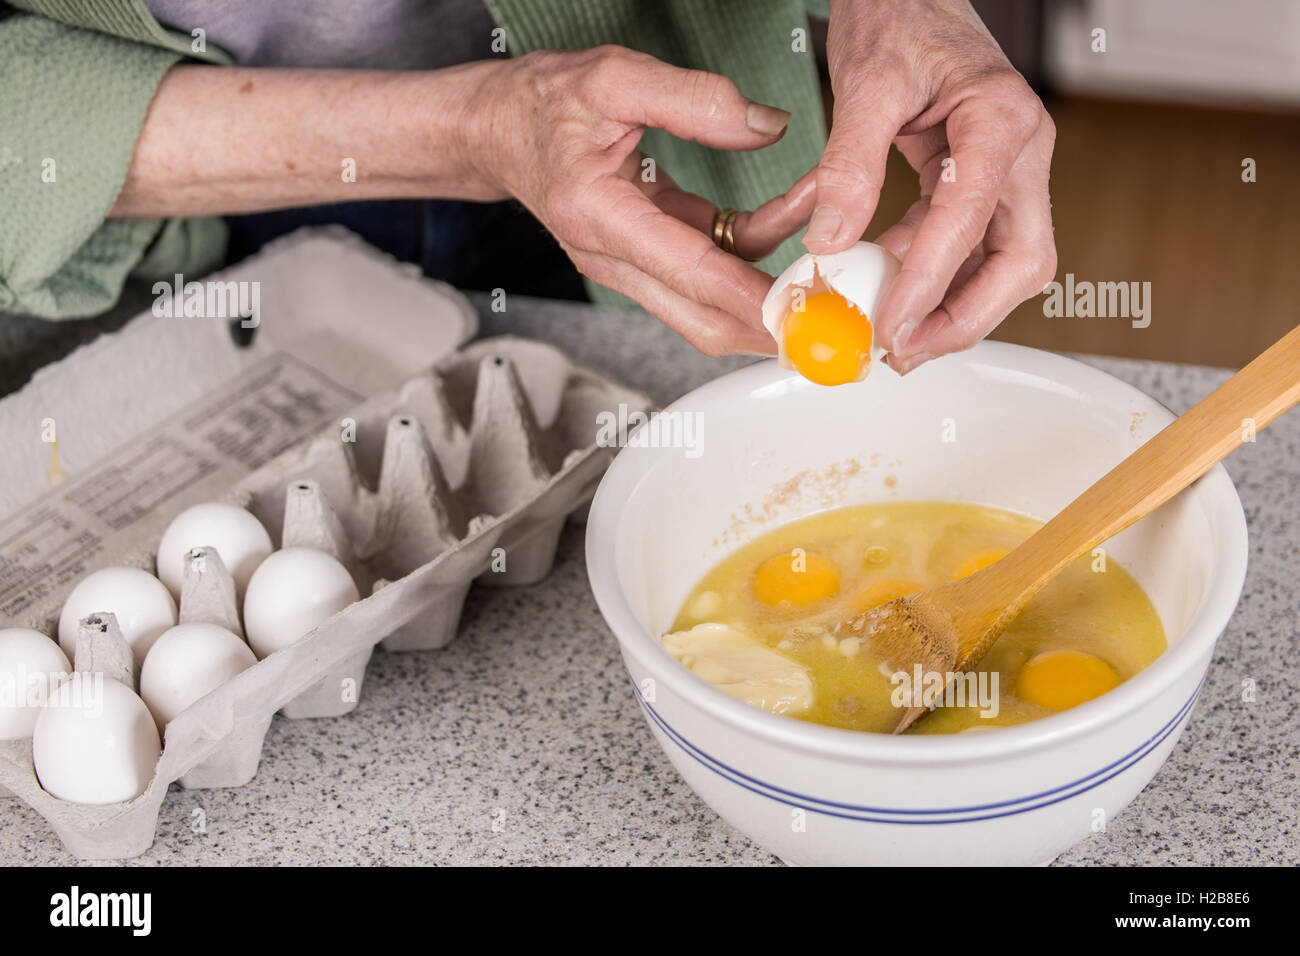 Frau bricht ein Ei nur das Eigelb zu den anderen Bestandteilen der Affe  Brot hinzufügen Stockfotografie - Alamy